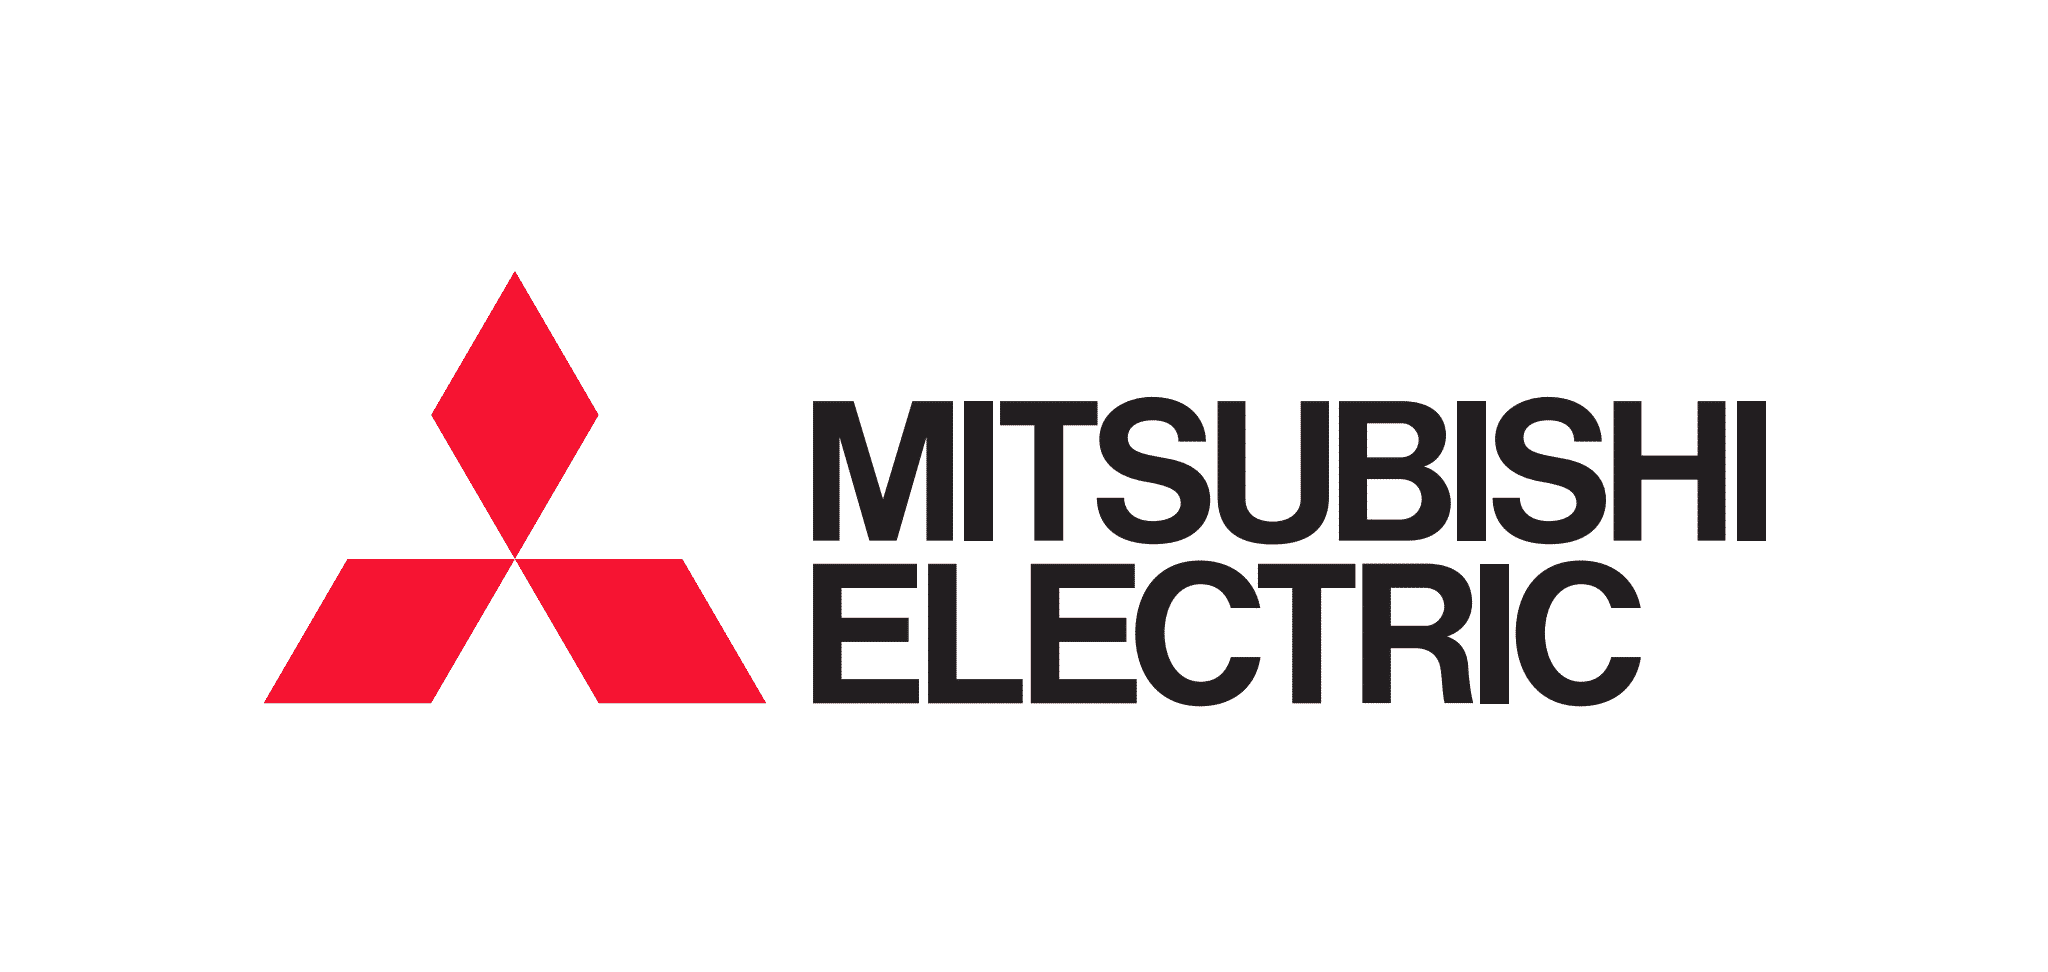 Mitsubishi Electrics produktområden - Hos oss på Polarpumpen hittar du några olika produktområden från Mitsubishi Electric, närmare bestämt luftvärmepumpar och värmeväxlare